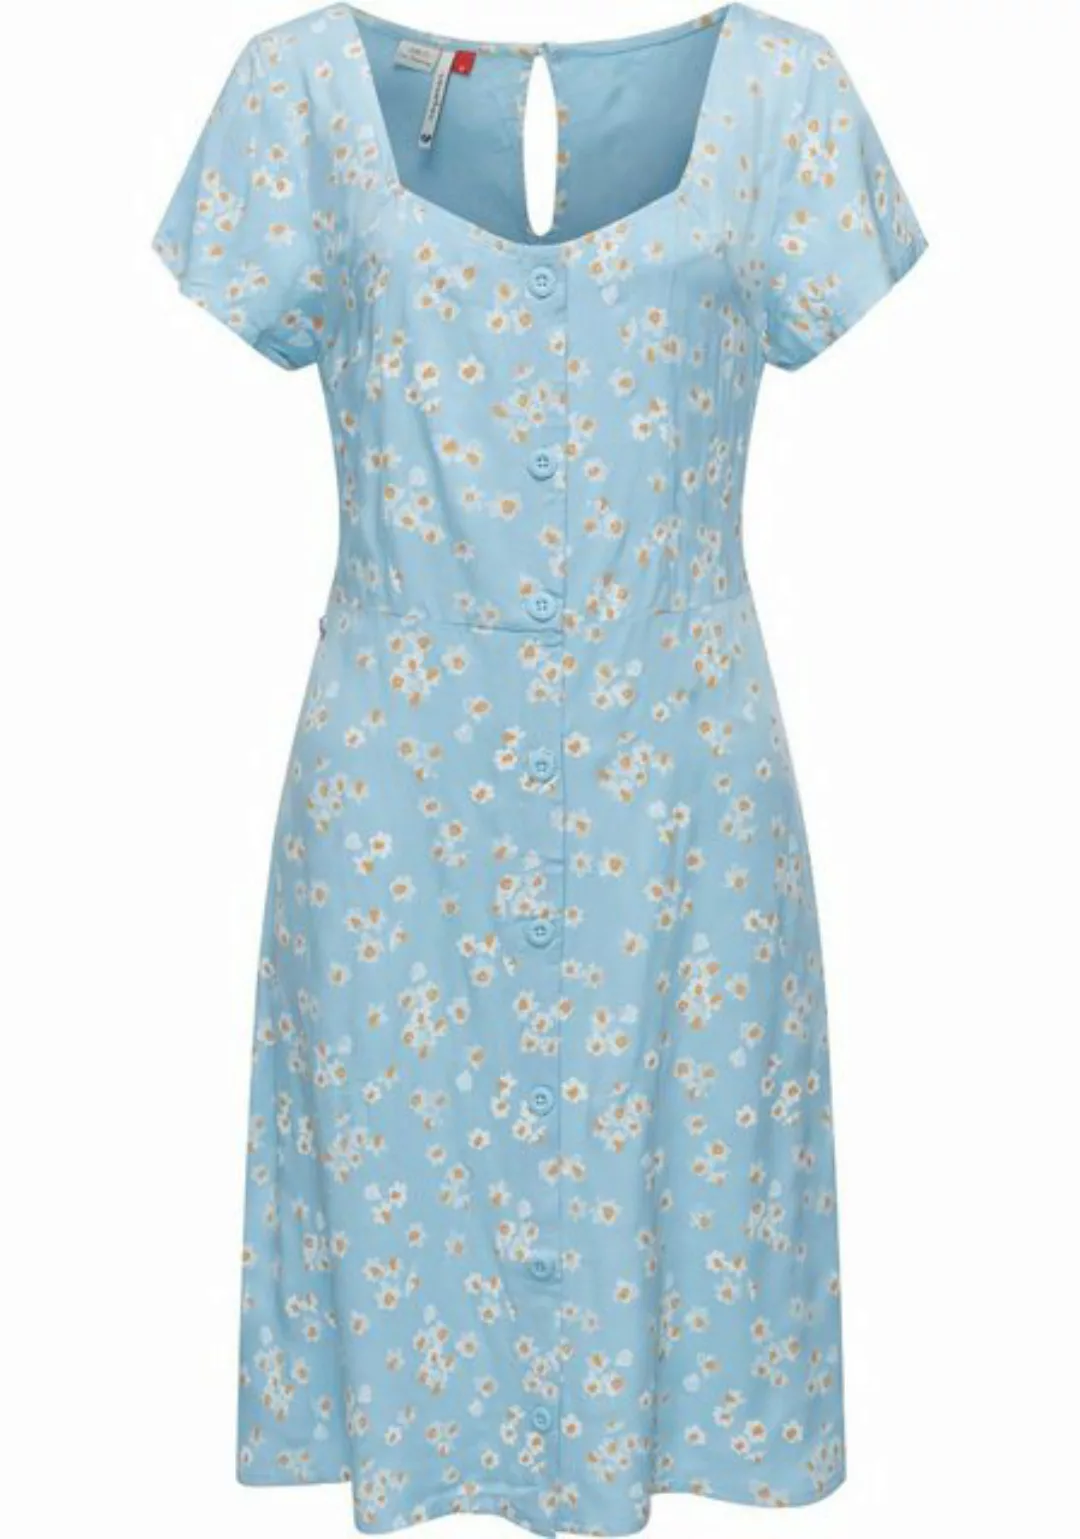 Ragwear Blusenkleid "Anerley", stylisches Sommerkleid mit Allover Print günstig online kaufen